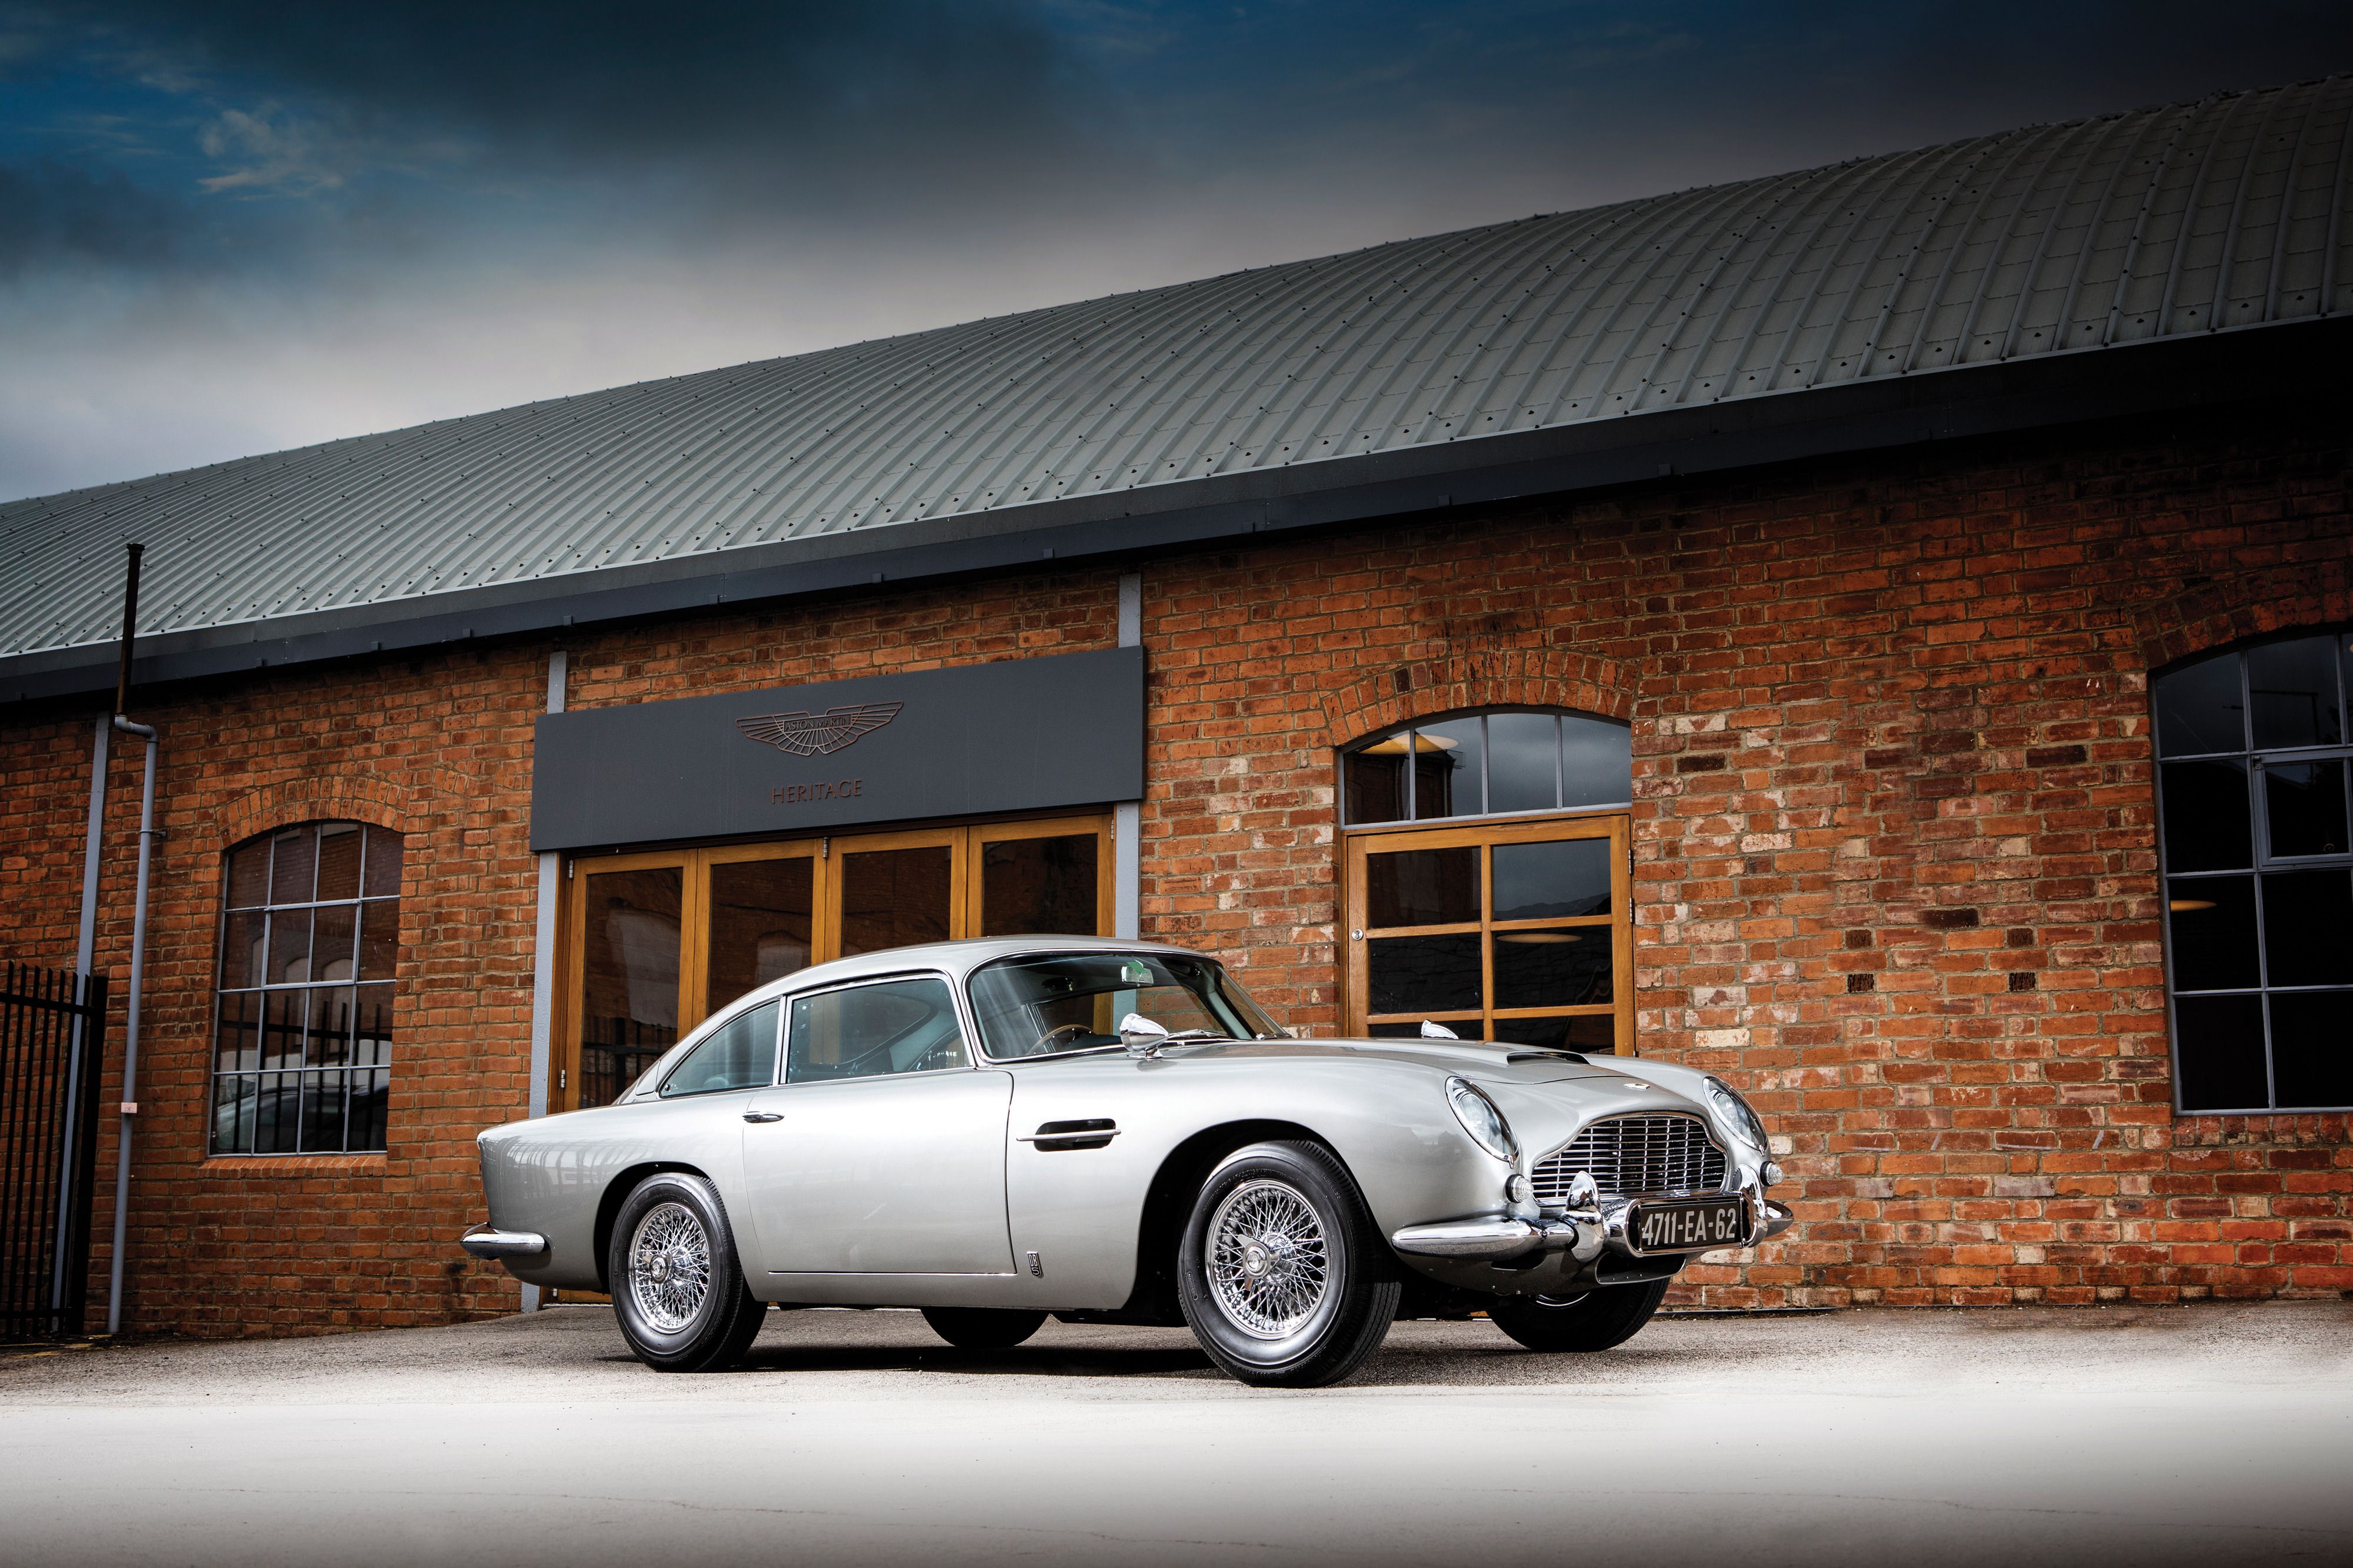 Легендарний автомобіль Джеймса Бонда виставлений на аукціон. Aston Martin DB5 1965 року випуску — авто з перших фільмів про агента 007.